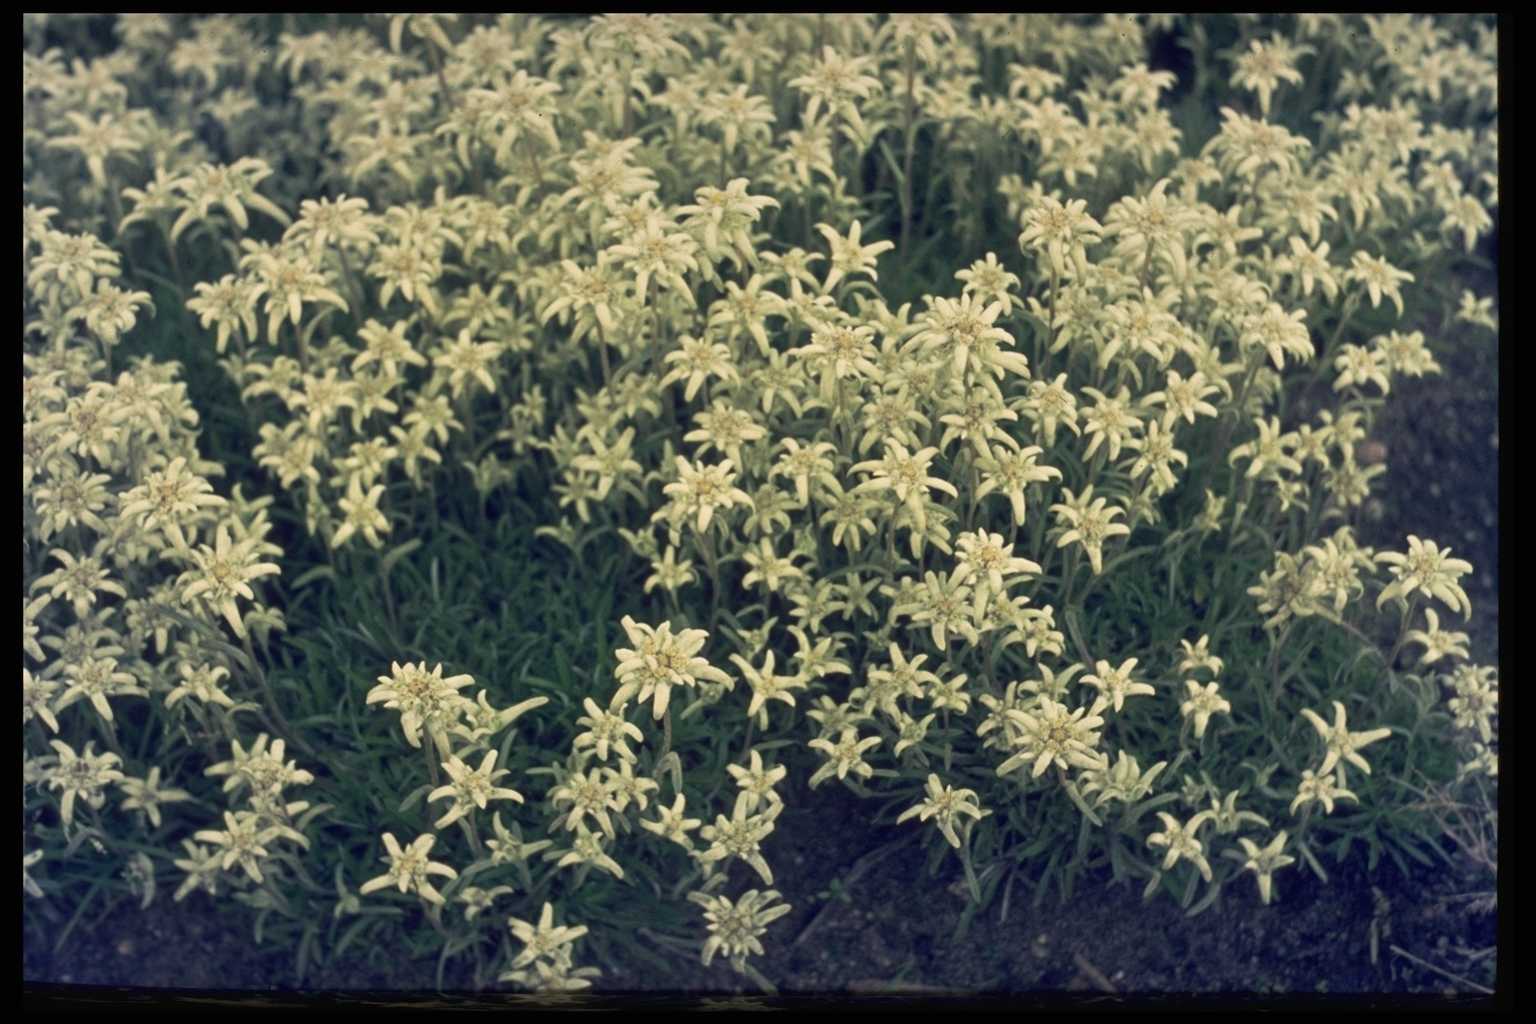 Leontopodium alpinum ‘Mignon’